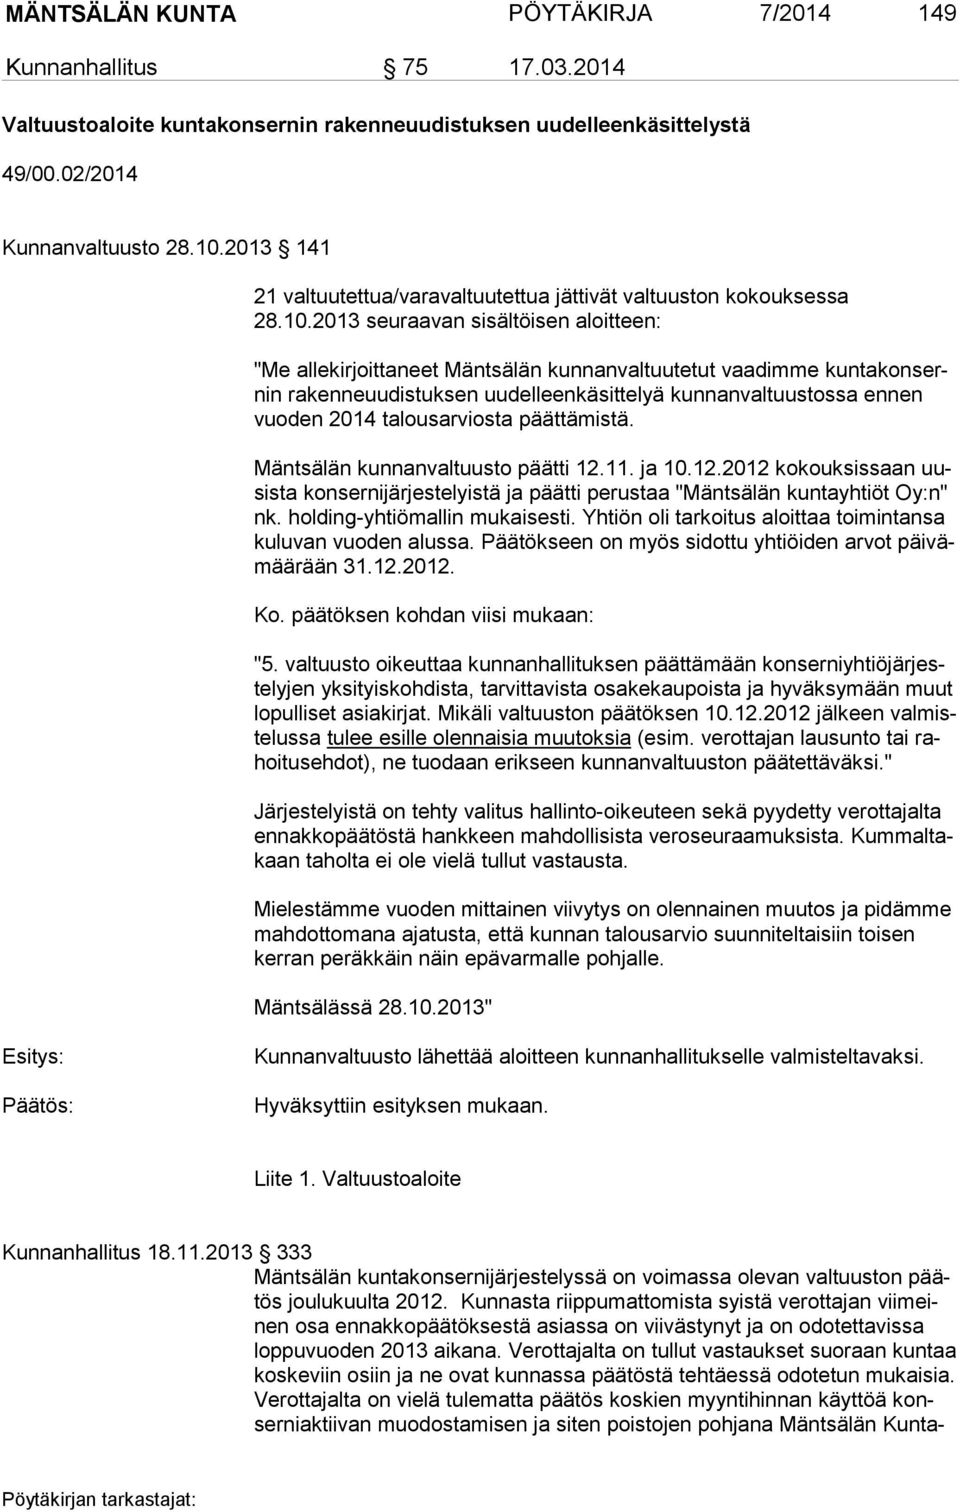 2013 seuraavan sisältöisen aloitteen: "Me allekirjoittaneet Mäntsälän kunnanvaltuutetut vaadimme kun ta kon sernin rakenneuudistuksen uudelleenkäsittelyä kunnanvaltuustossa ennen vuo den 2014